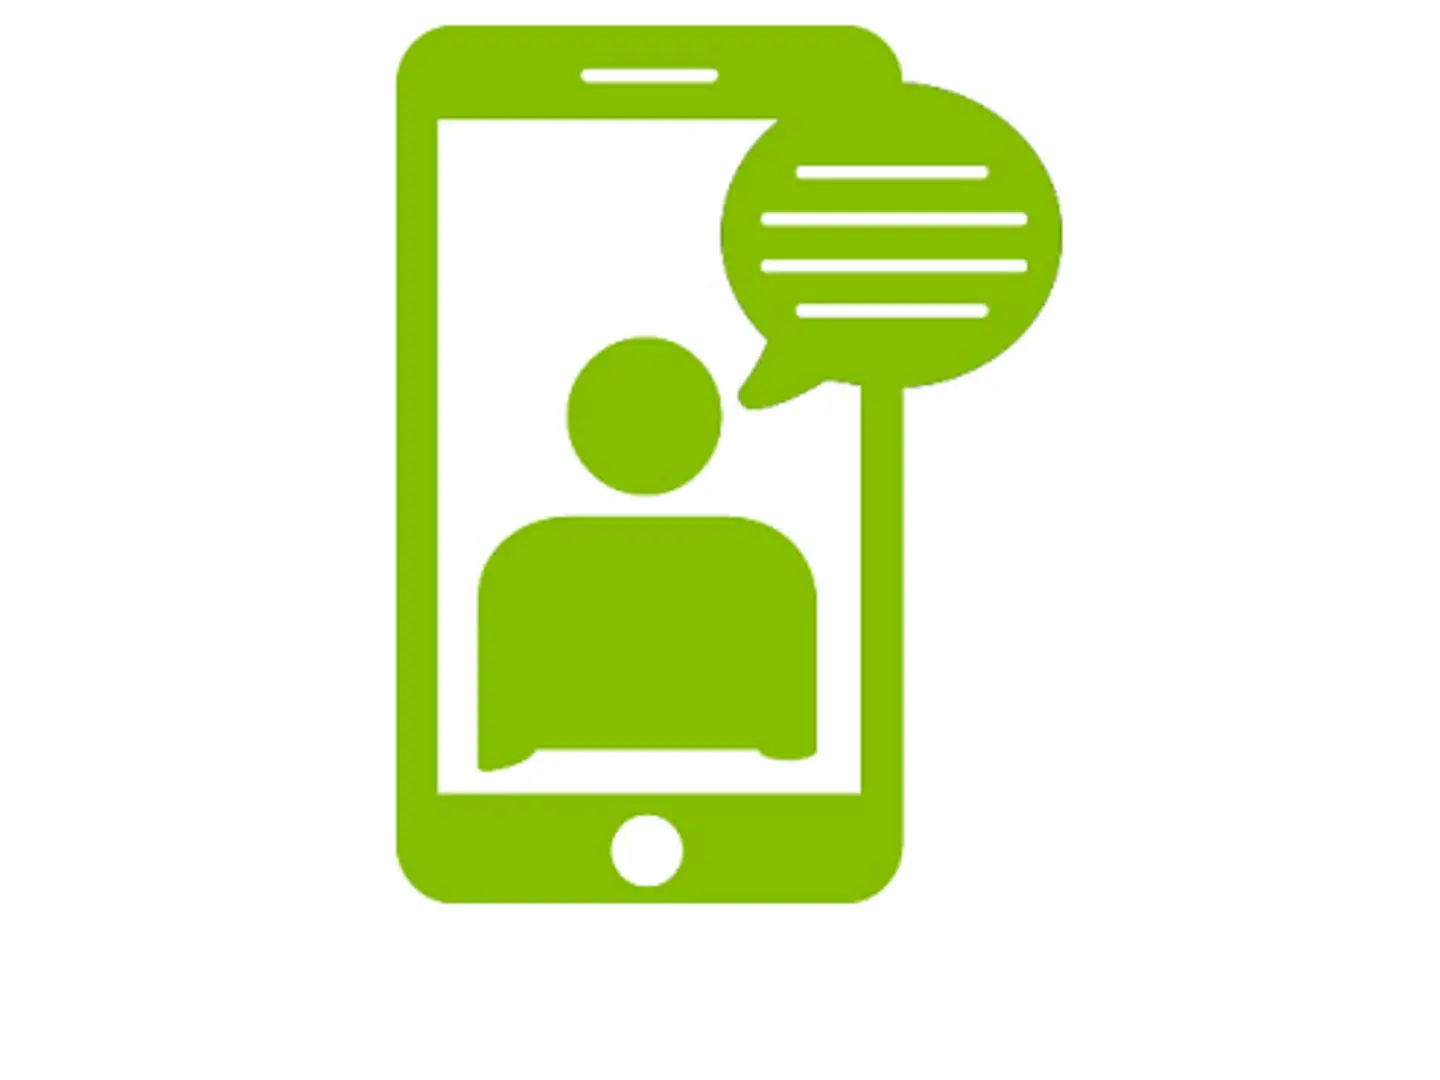 Ein offener Chat im Handy ist als Piktogramm abgebildet.